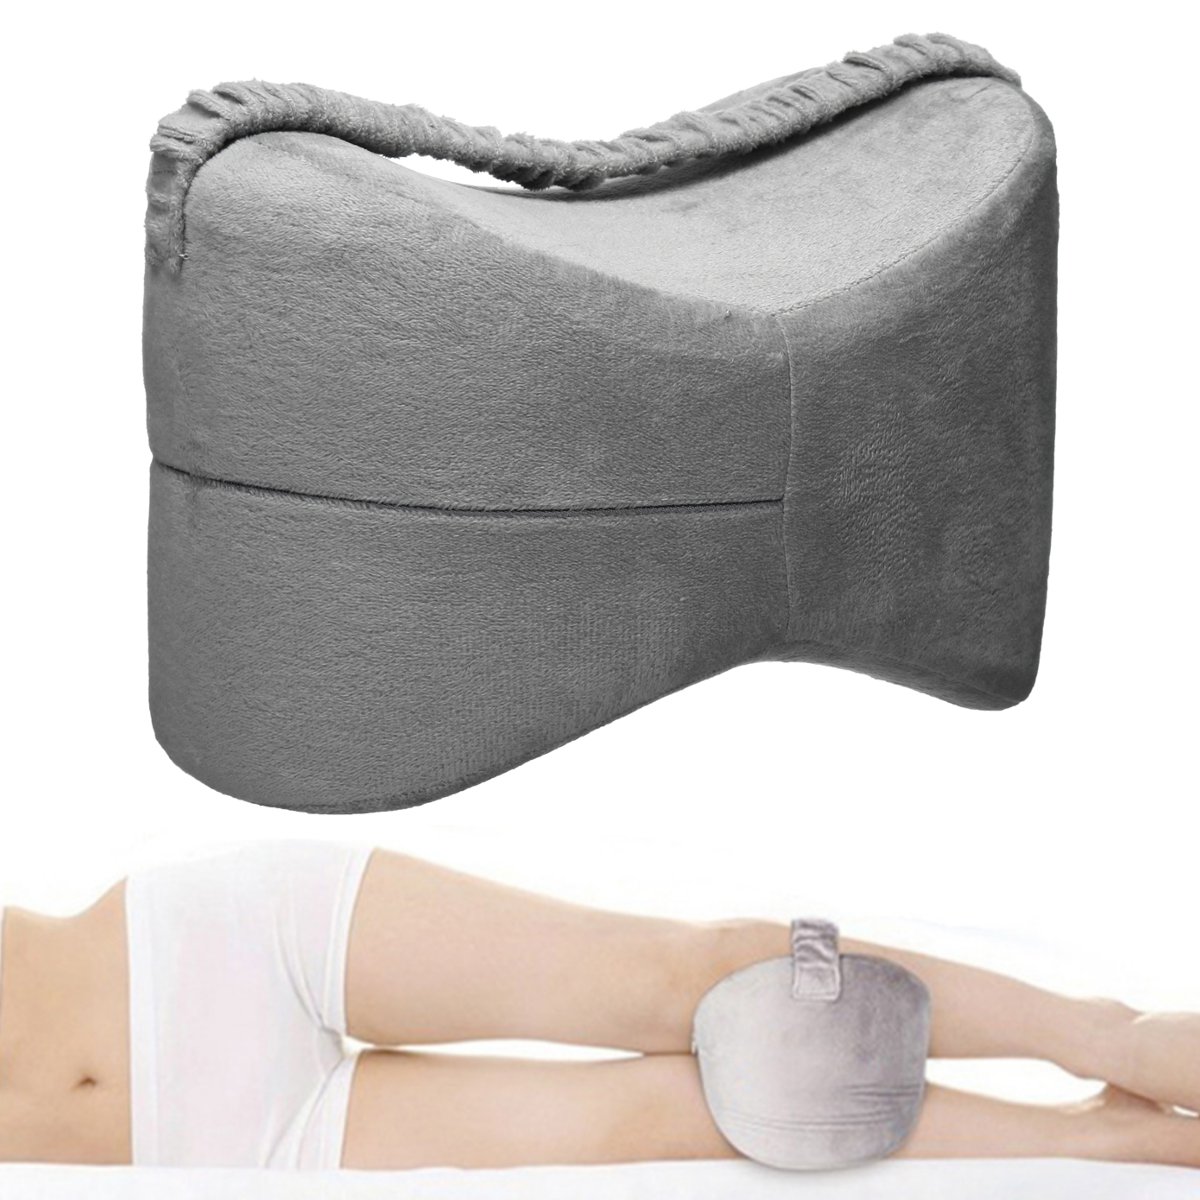 Memory-Foam-Leg-Pillow-Fatigue-Relief-Back-Hips-Knee-Support-Cushion-Pillow-1476958-5